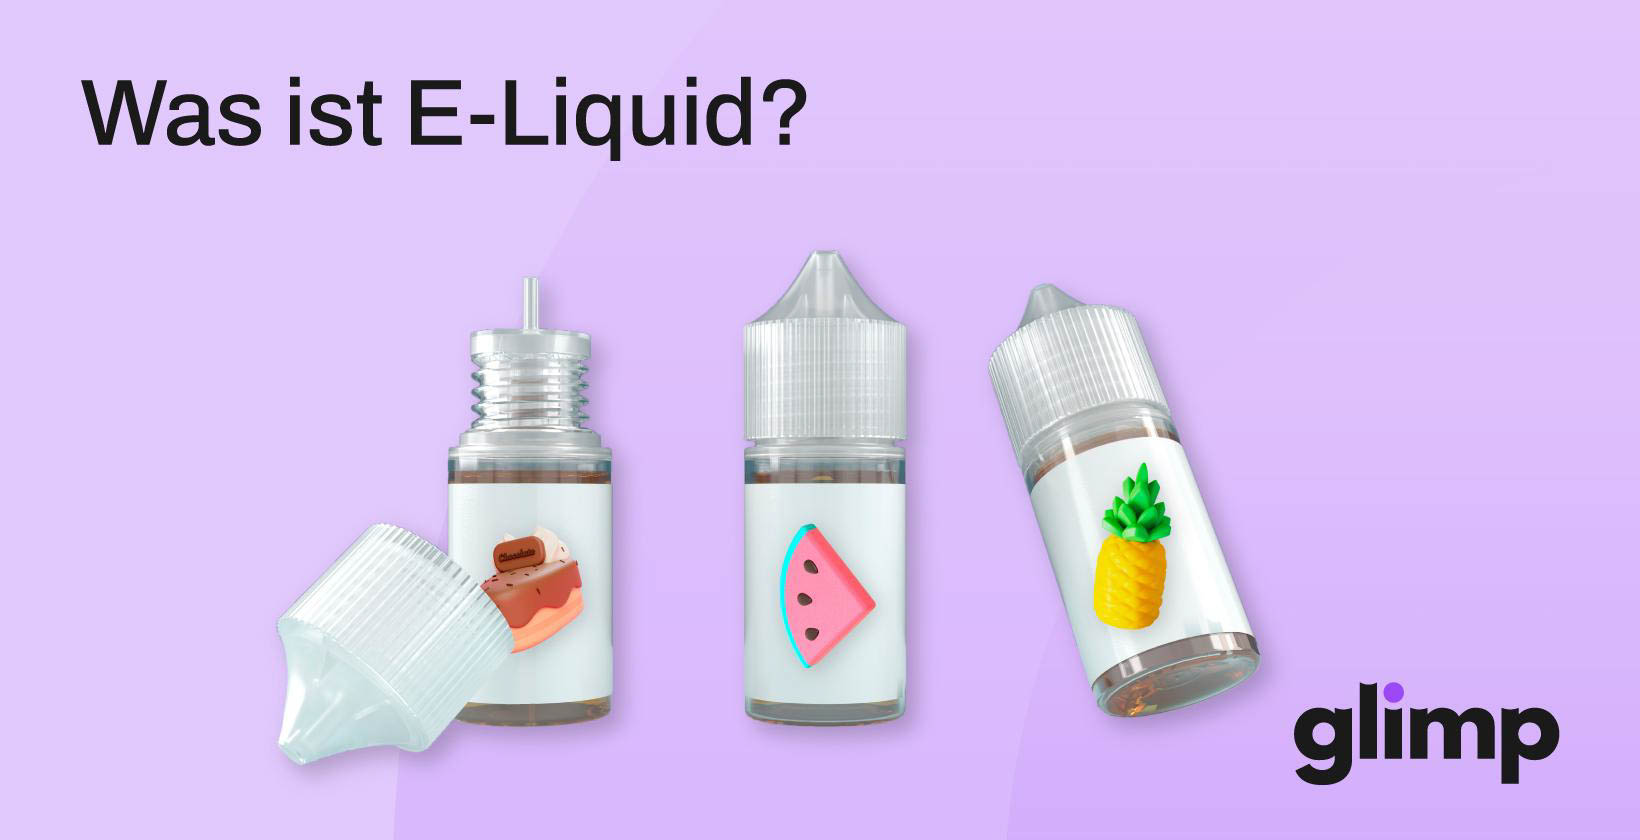 Was ist E-Liquid? Grundlegende Inhaltsstoffe, Vorteile und Nebenwirkungen